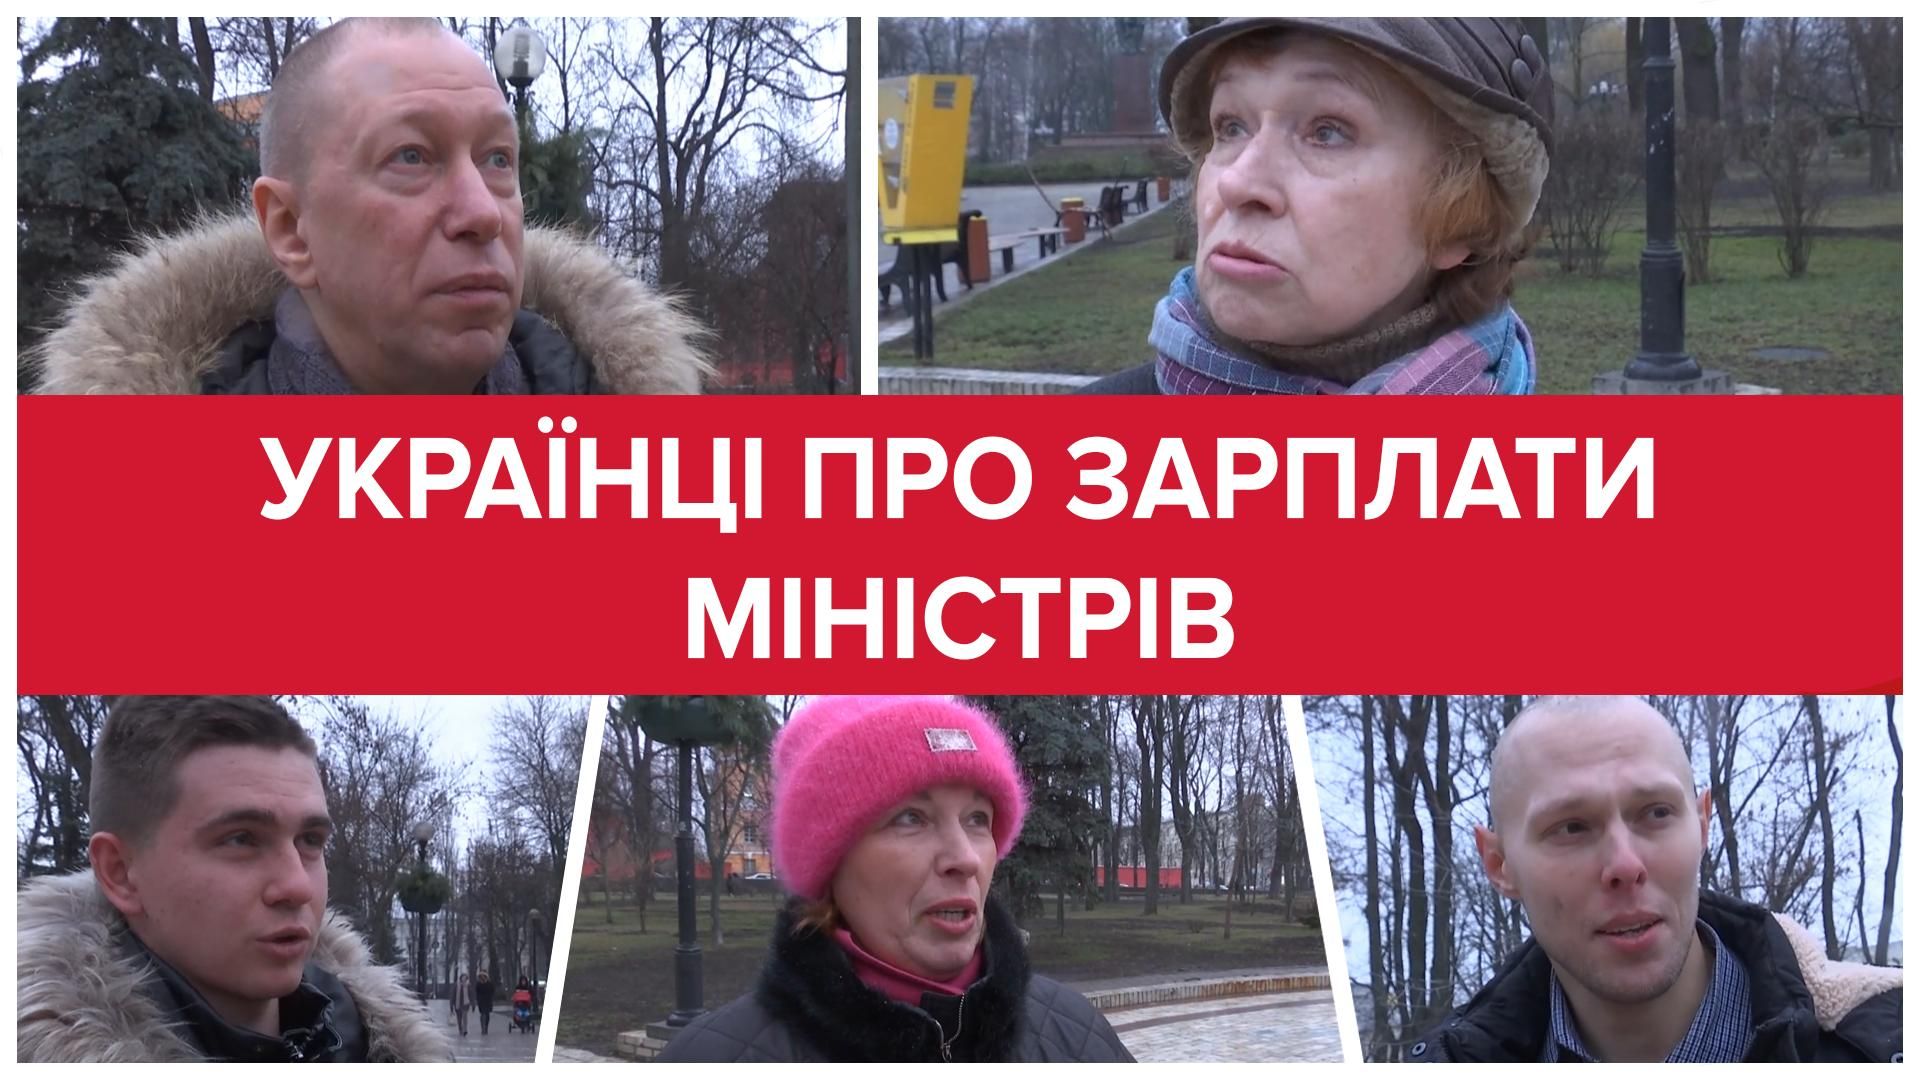 Як відреагували українці на зарплату Новосад у 36 тисяч гривень: відео